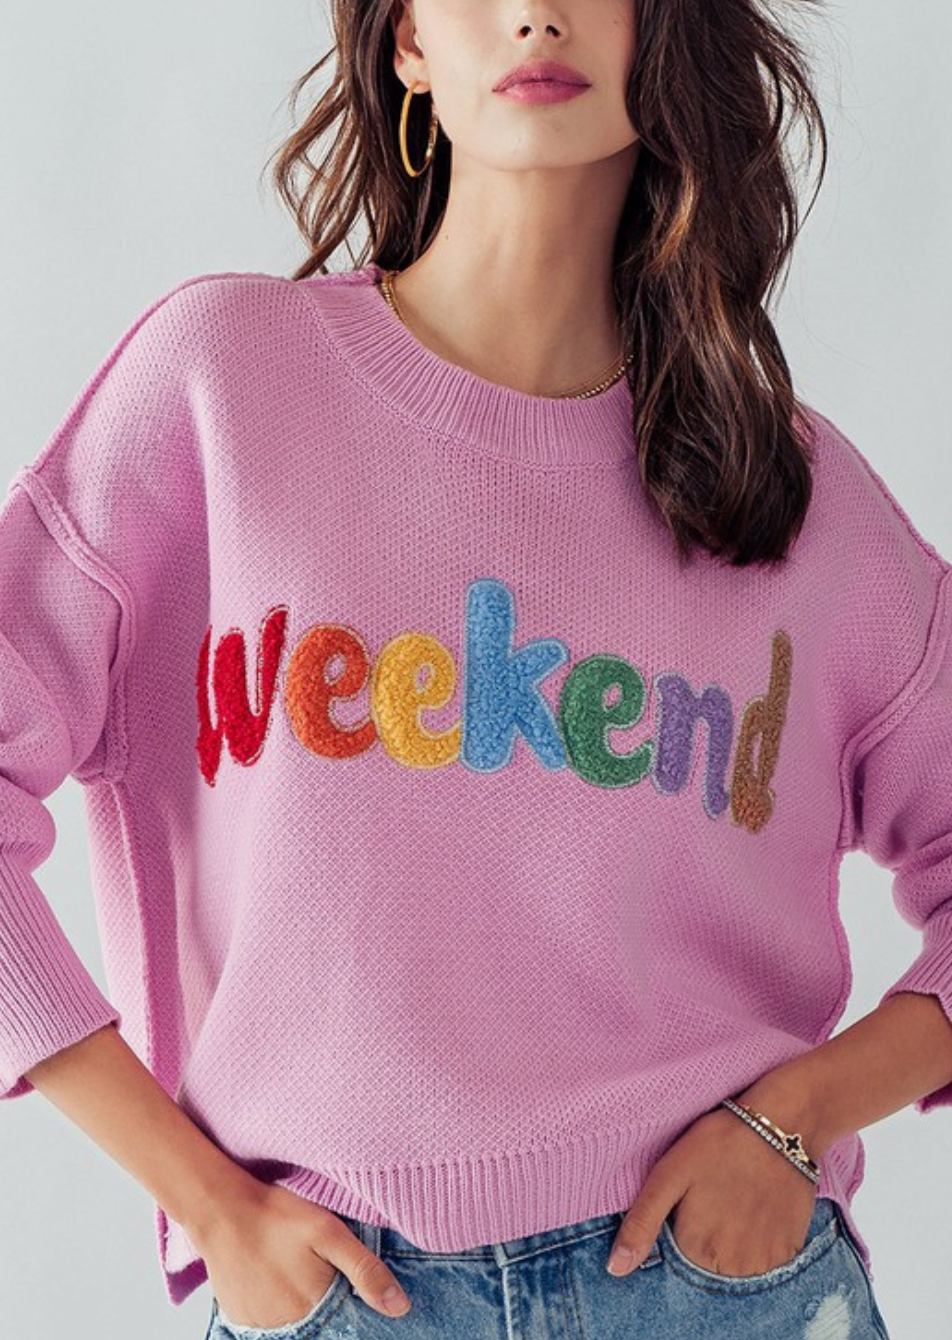 Celebrate WEEKEND Sweater